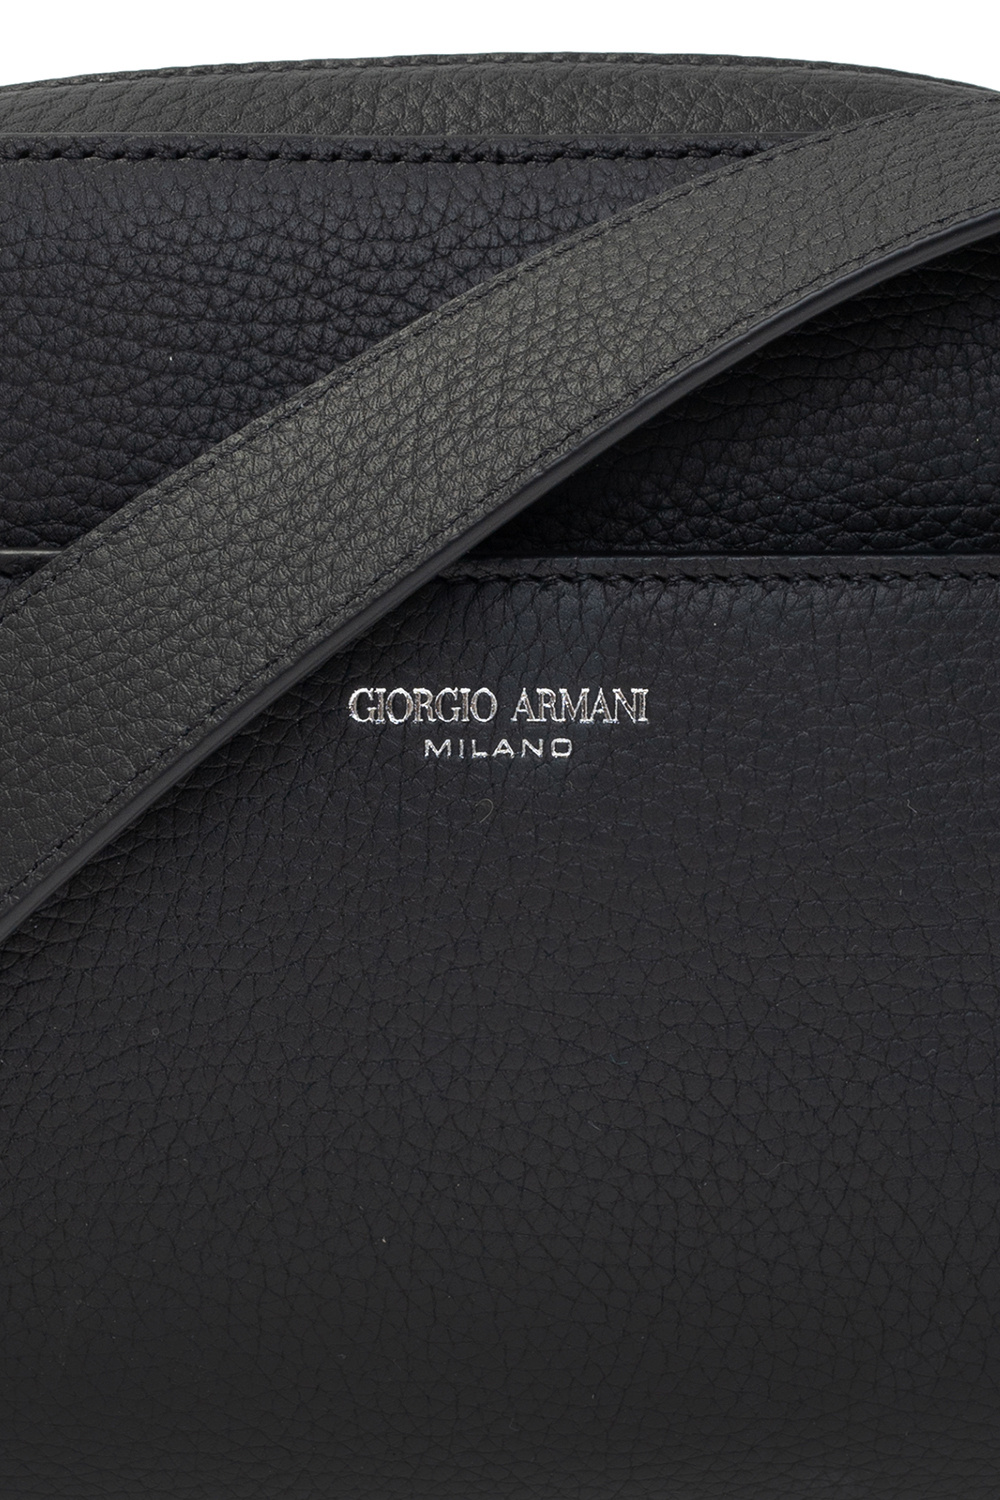 Giorgio strap armani Leather shoulder bag